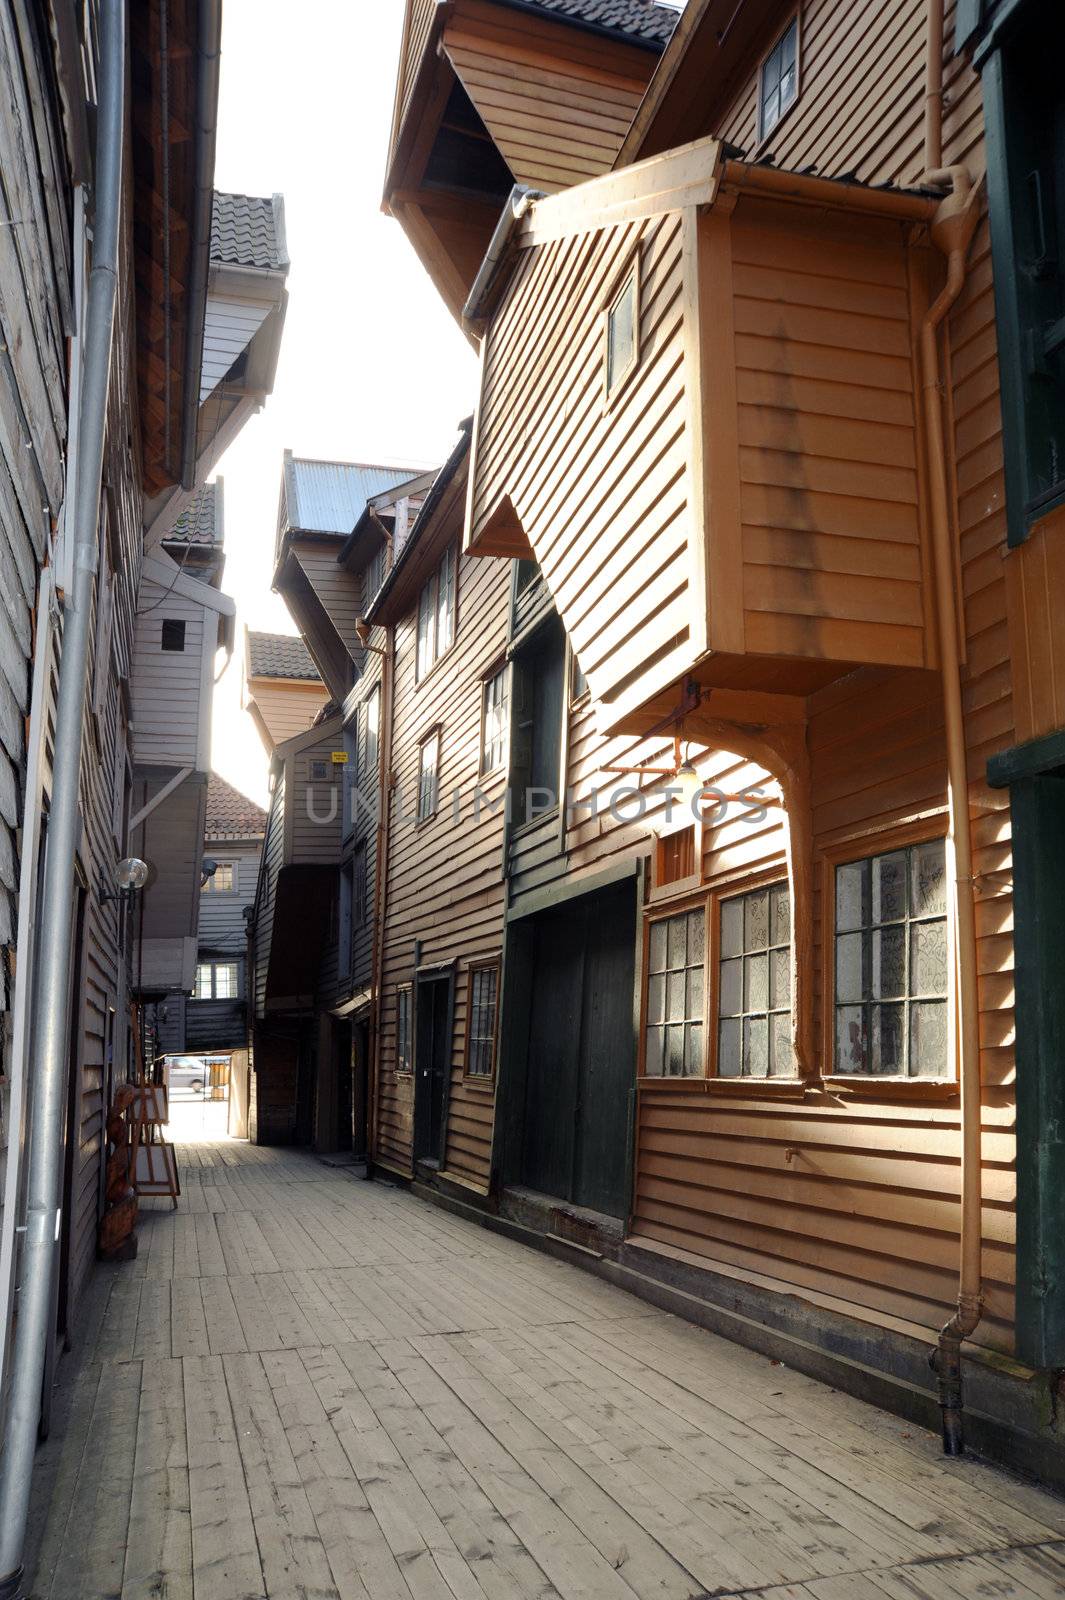 Wooden Bergen by Alenmax